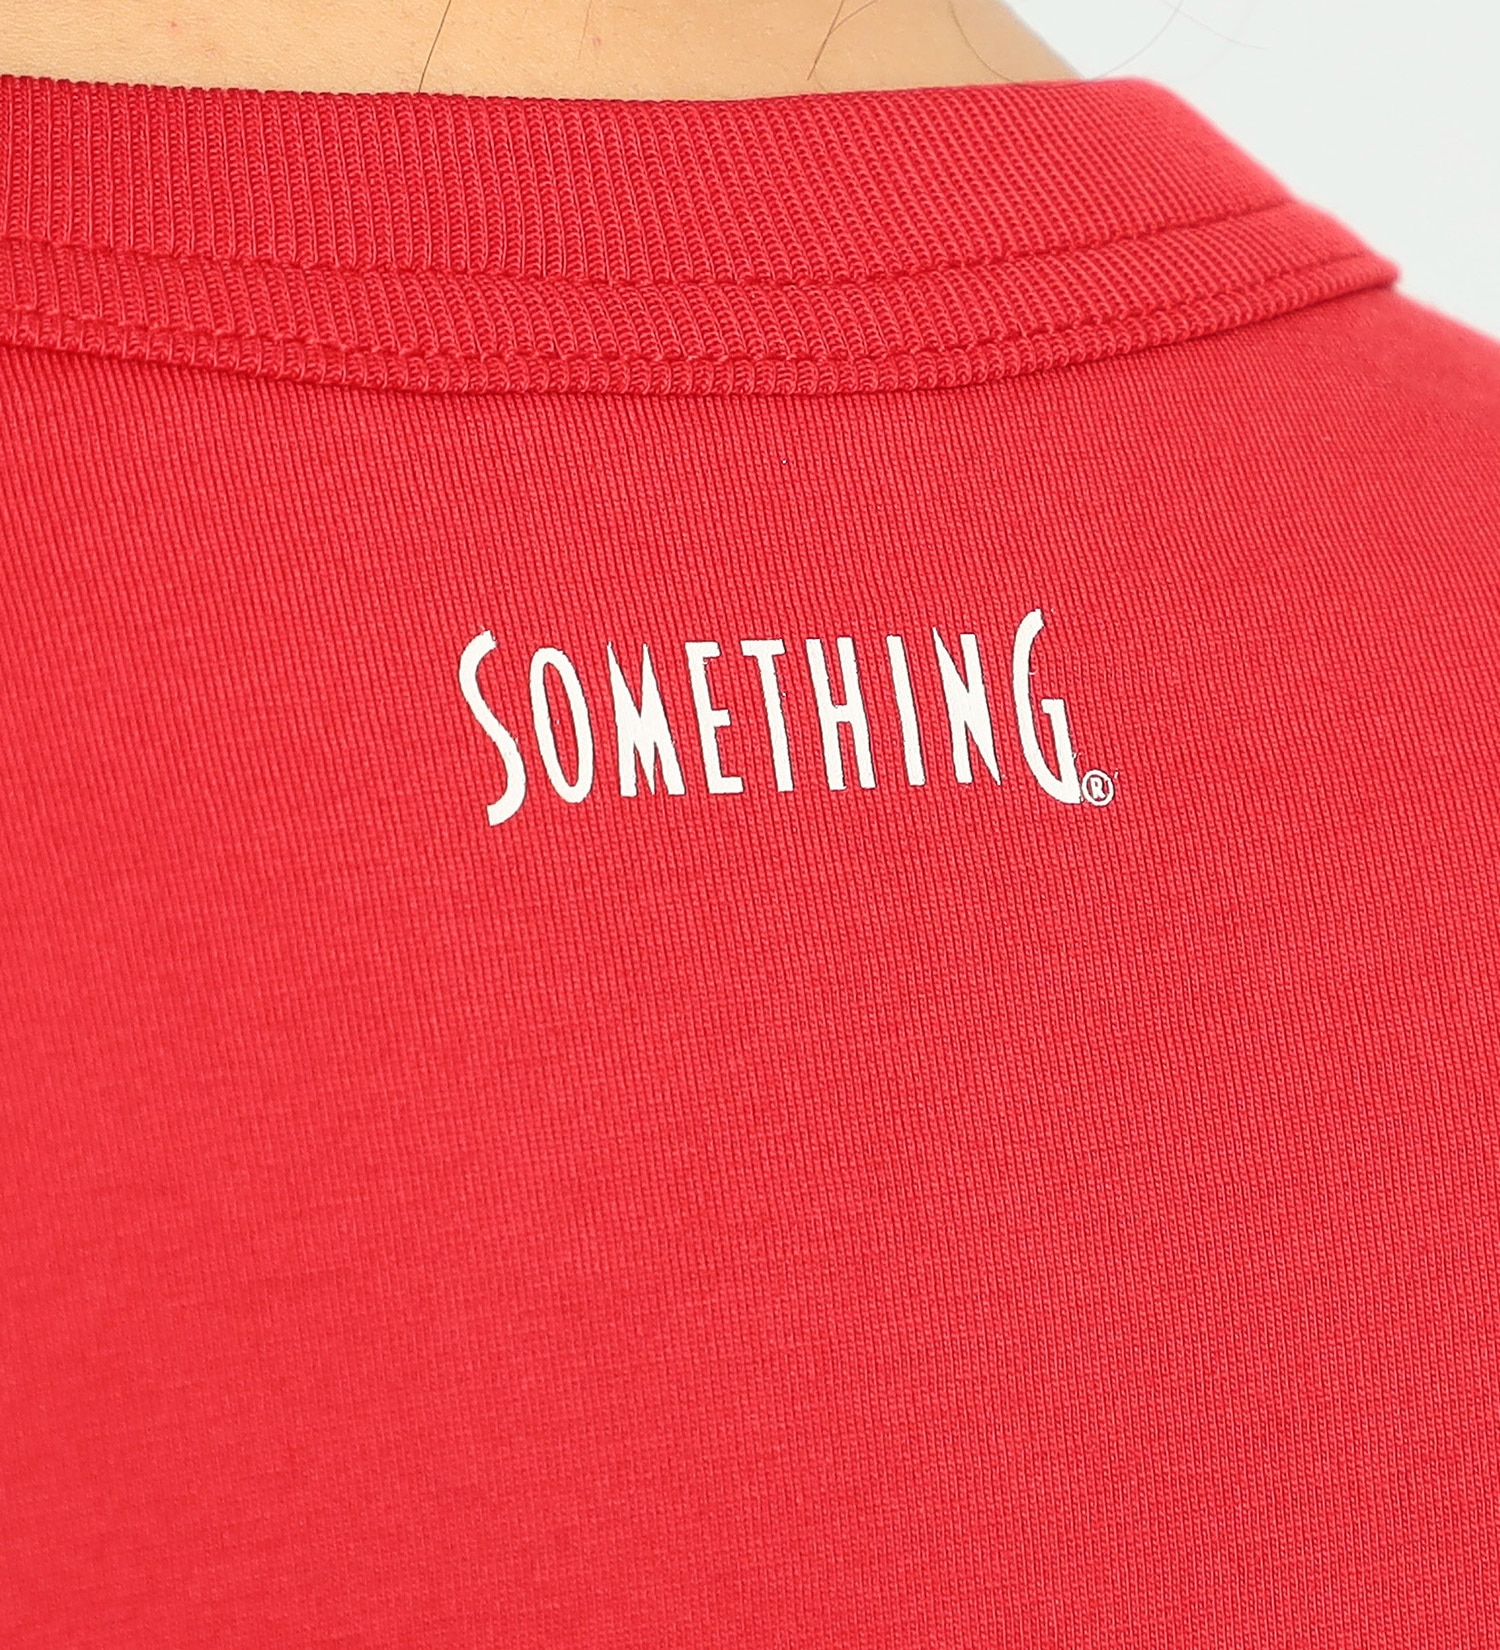 SOMETHING(サムシング)のSOMETHING フレンチメッセージ半袖Tシャツ|トップス/Tシャツ/カットソー/レディース|レッド